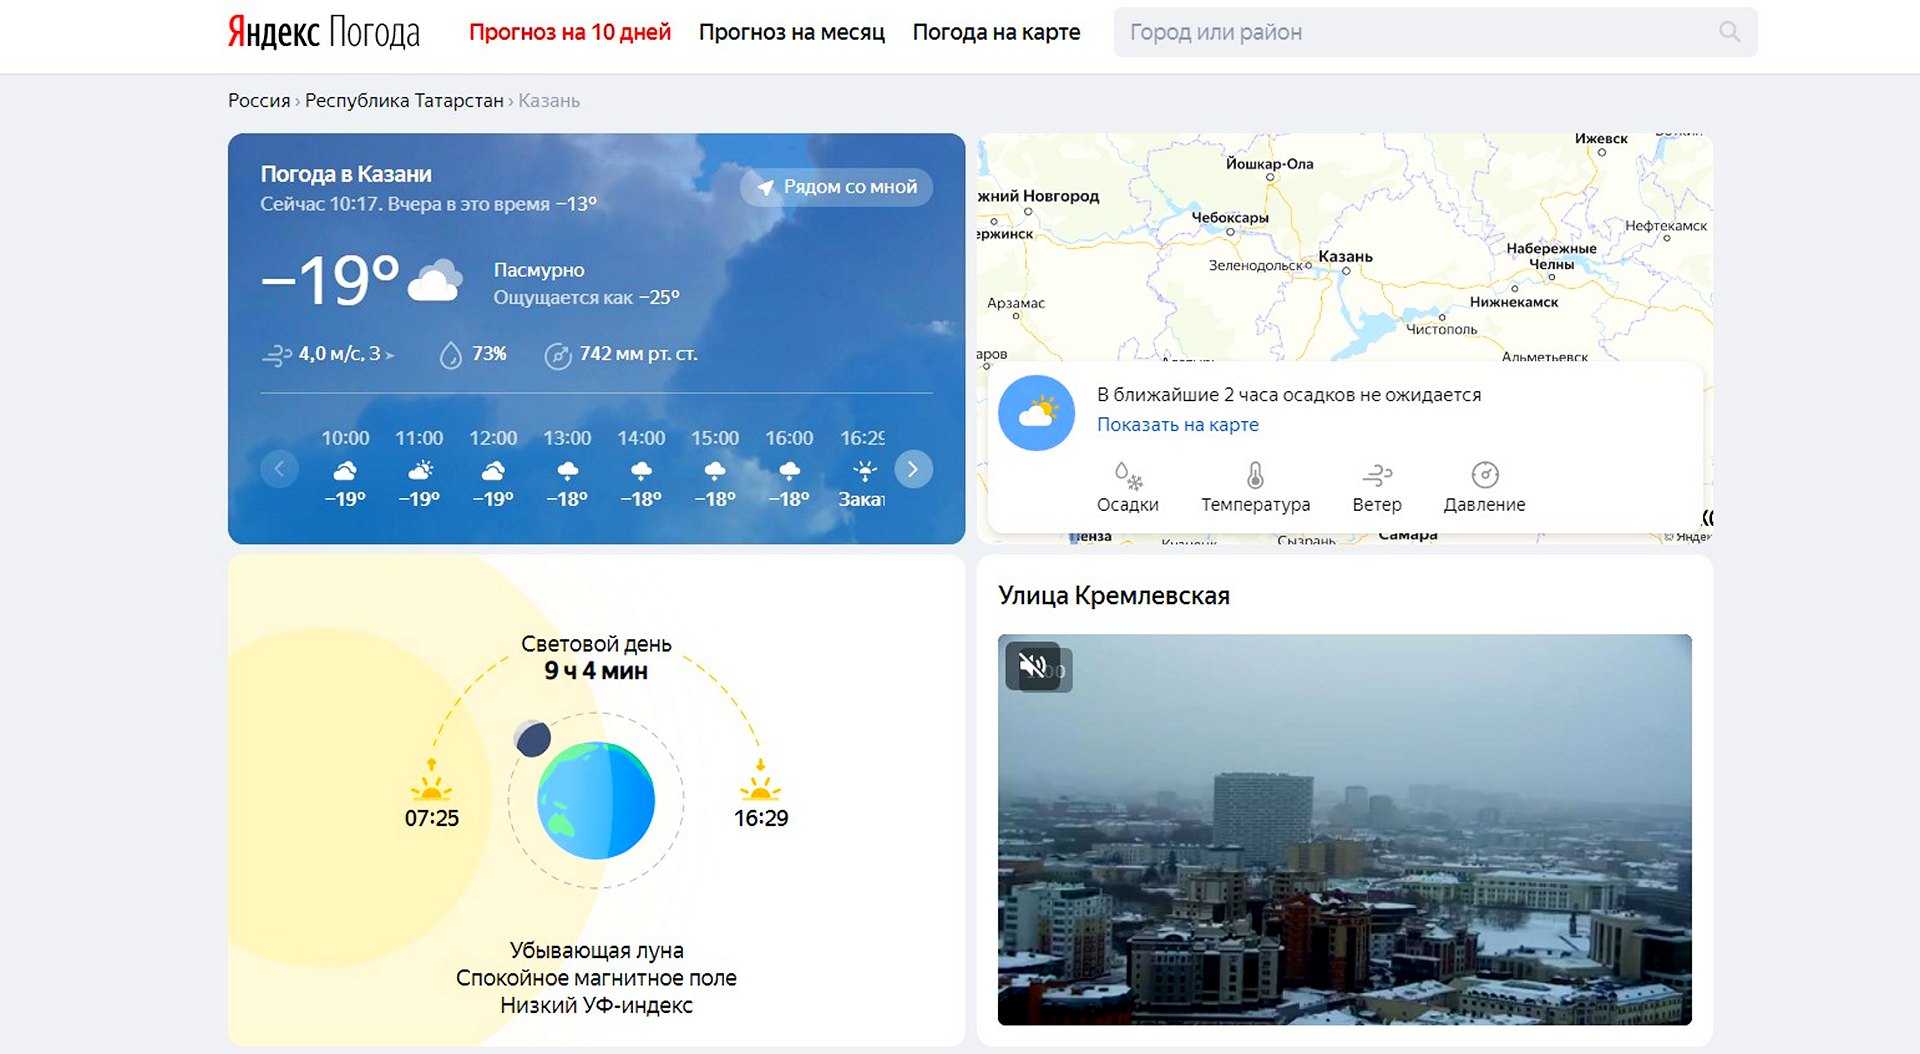 Какой прогноз погоды самый точный. Яндекс погода. Прогноз погоды Яндекс. Яндекс погода карта. Яндекс.погода прогноз погоды.